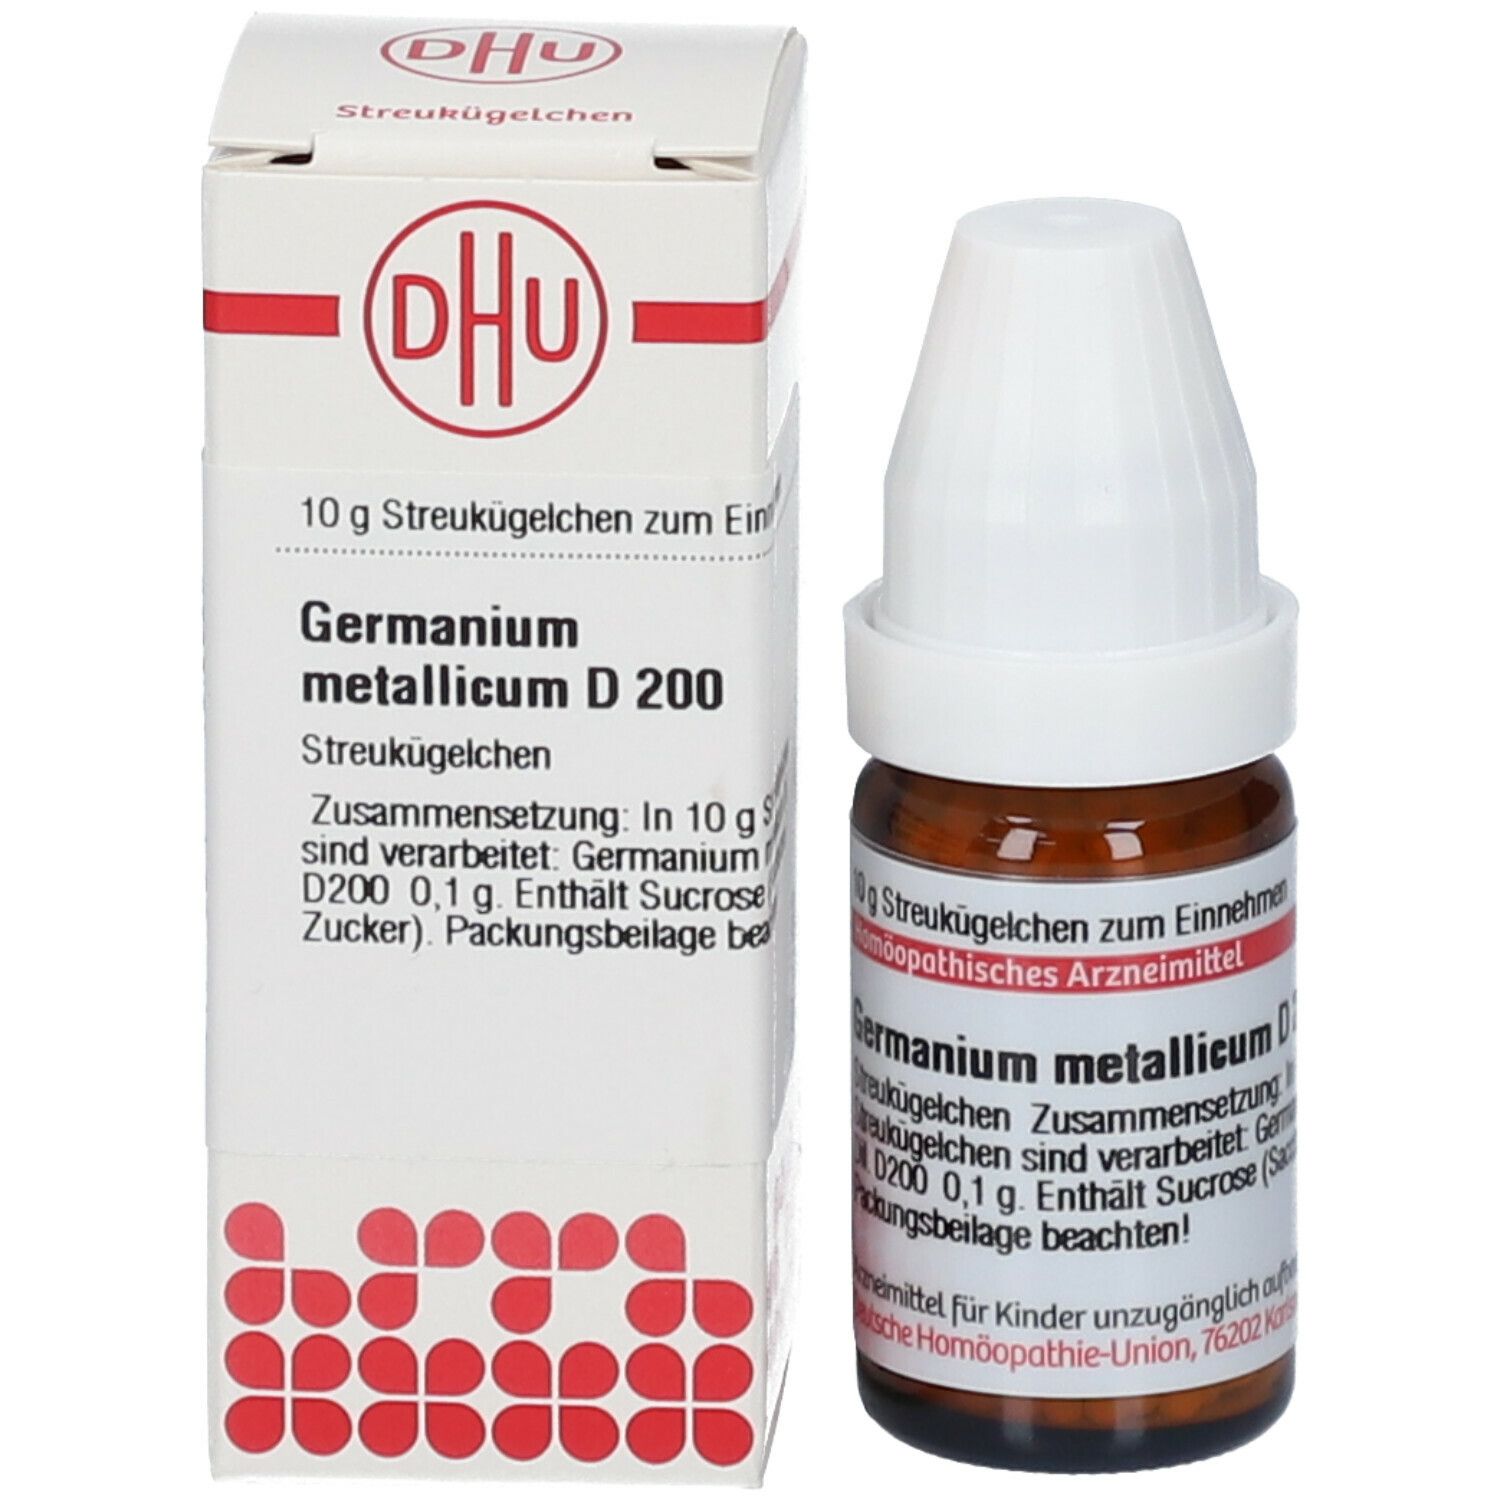 DHU Germanium Metallicum D200